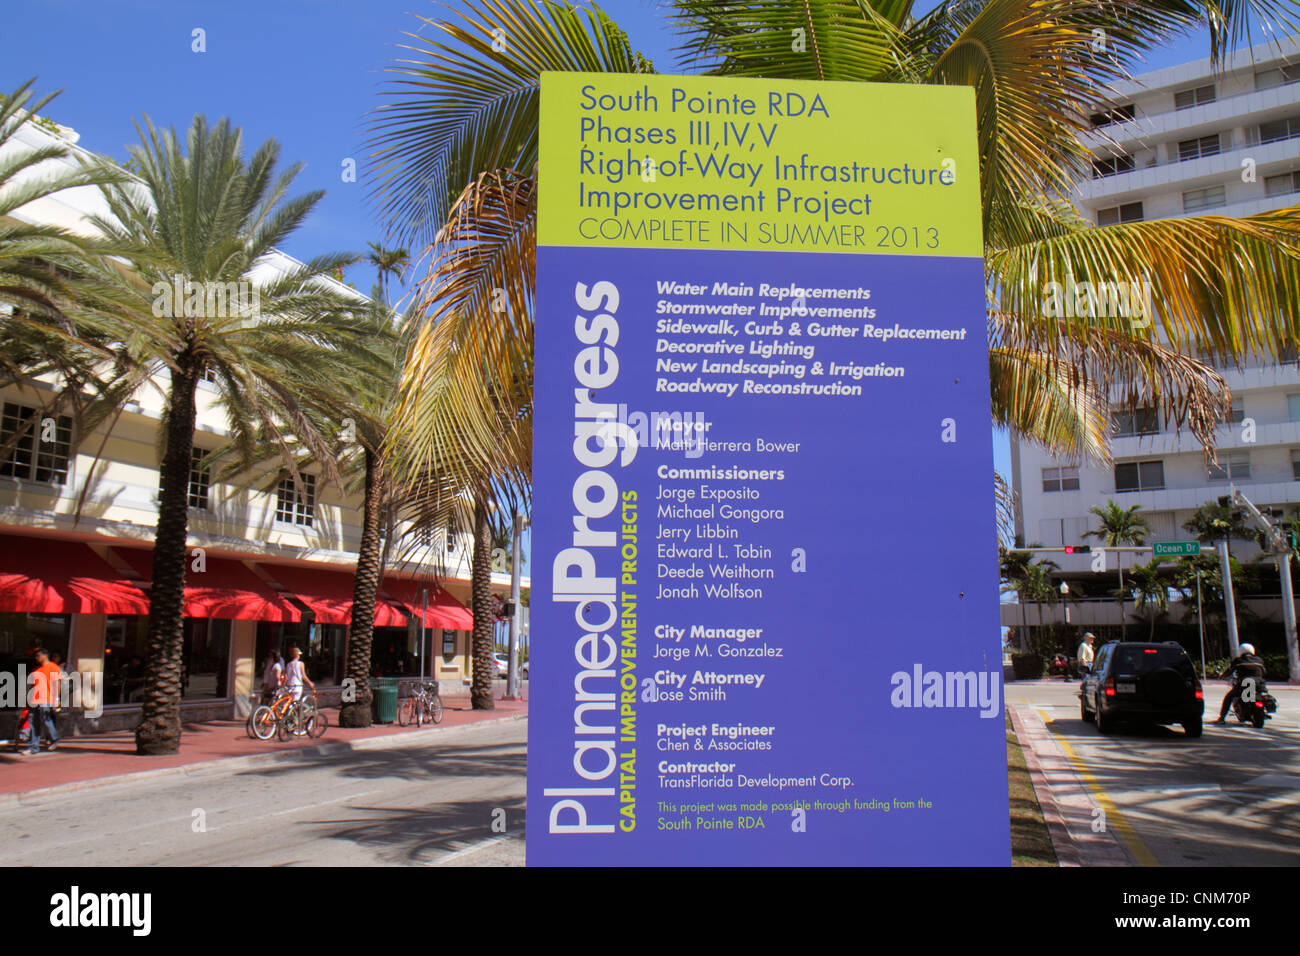 Miami Beach, Florida, Fifth 5th Street, Schild, Infrastrukturprojekt zur Verbesserung des Kapitalvermögens, Ersatz von Wasserhauptanlagen, Straßenumbau, Gebäude, Baustelle, Baumeister Stockfoto